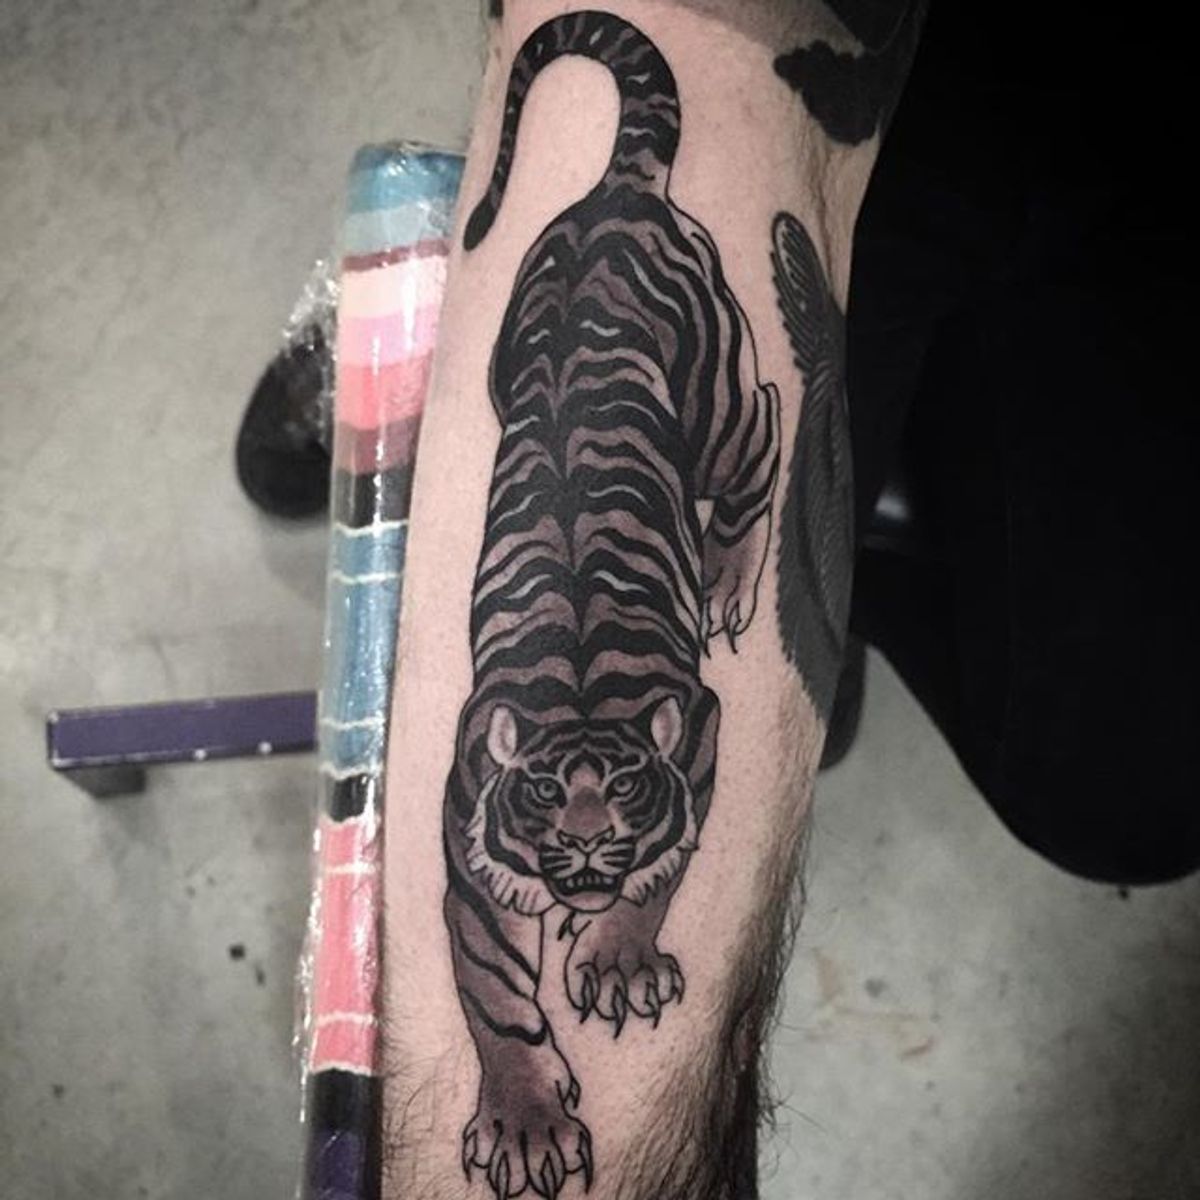 Tattoo uploaded by Robert Davies • Crawling Tiger Tattoo #blackwork # ...